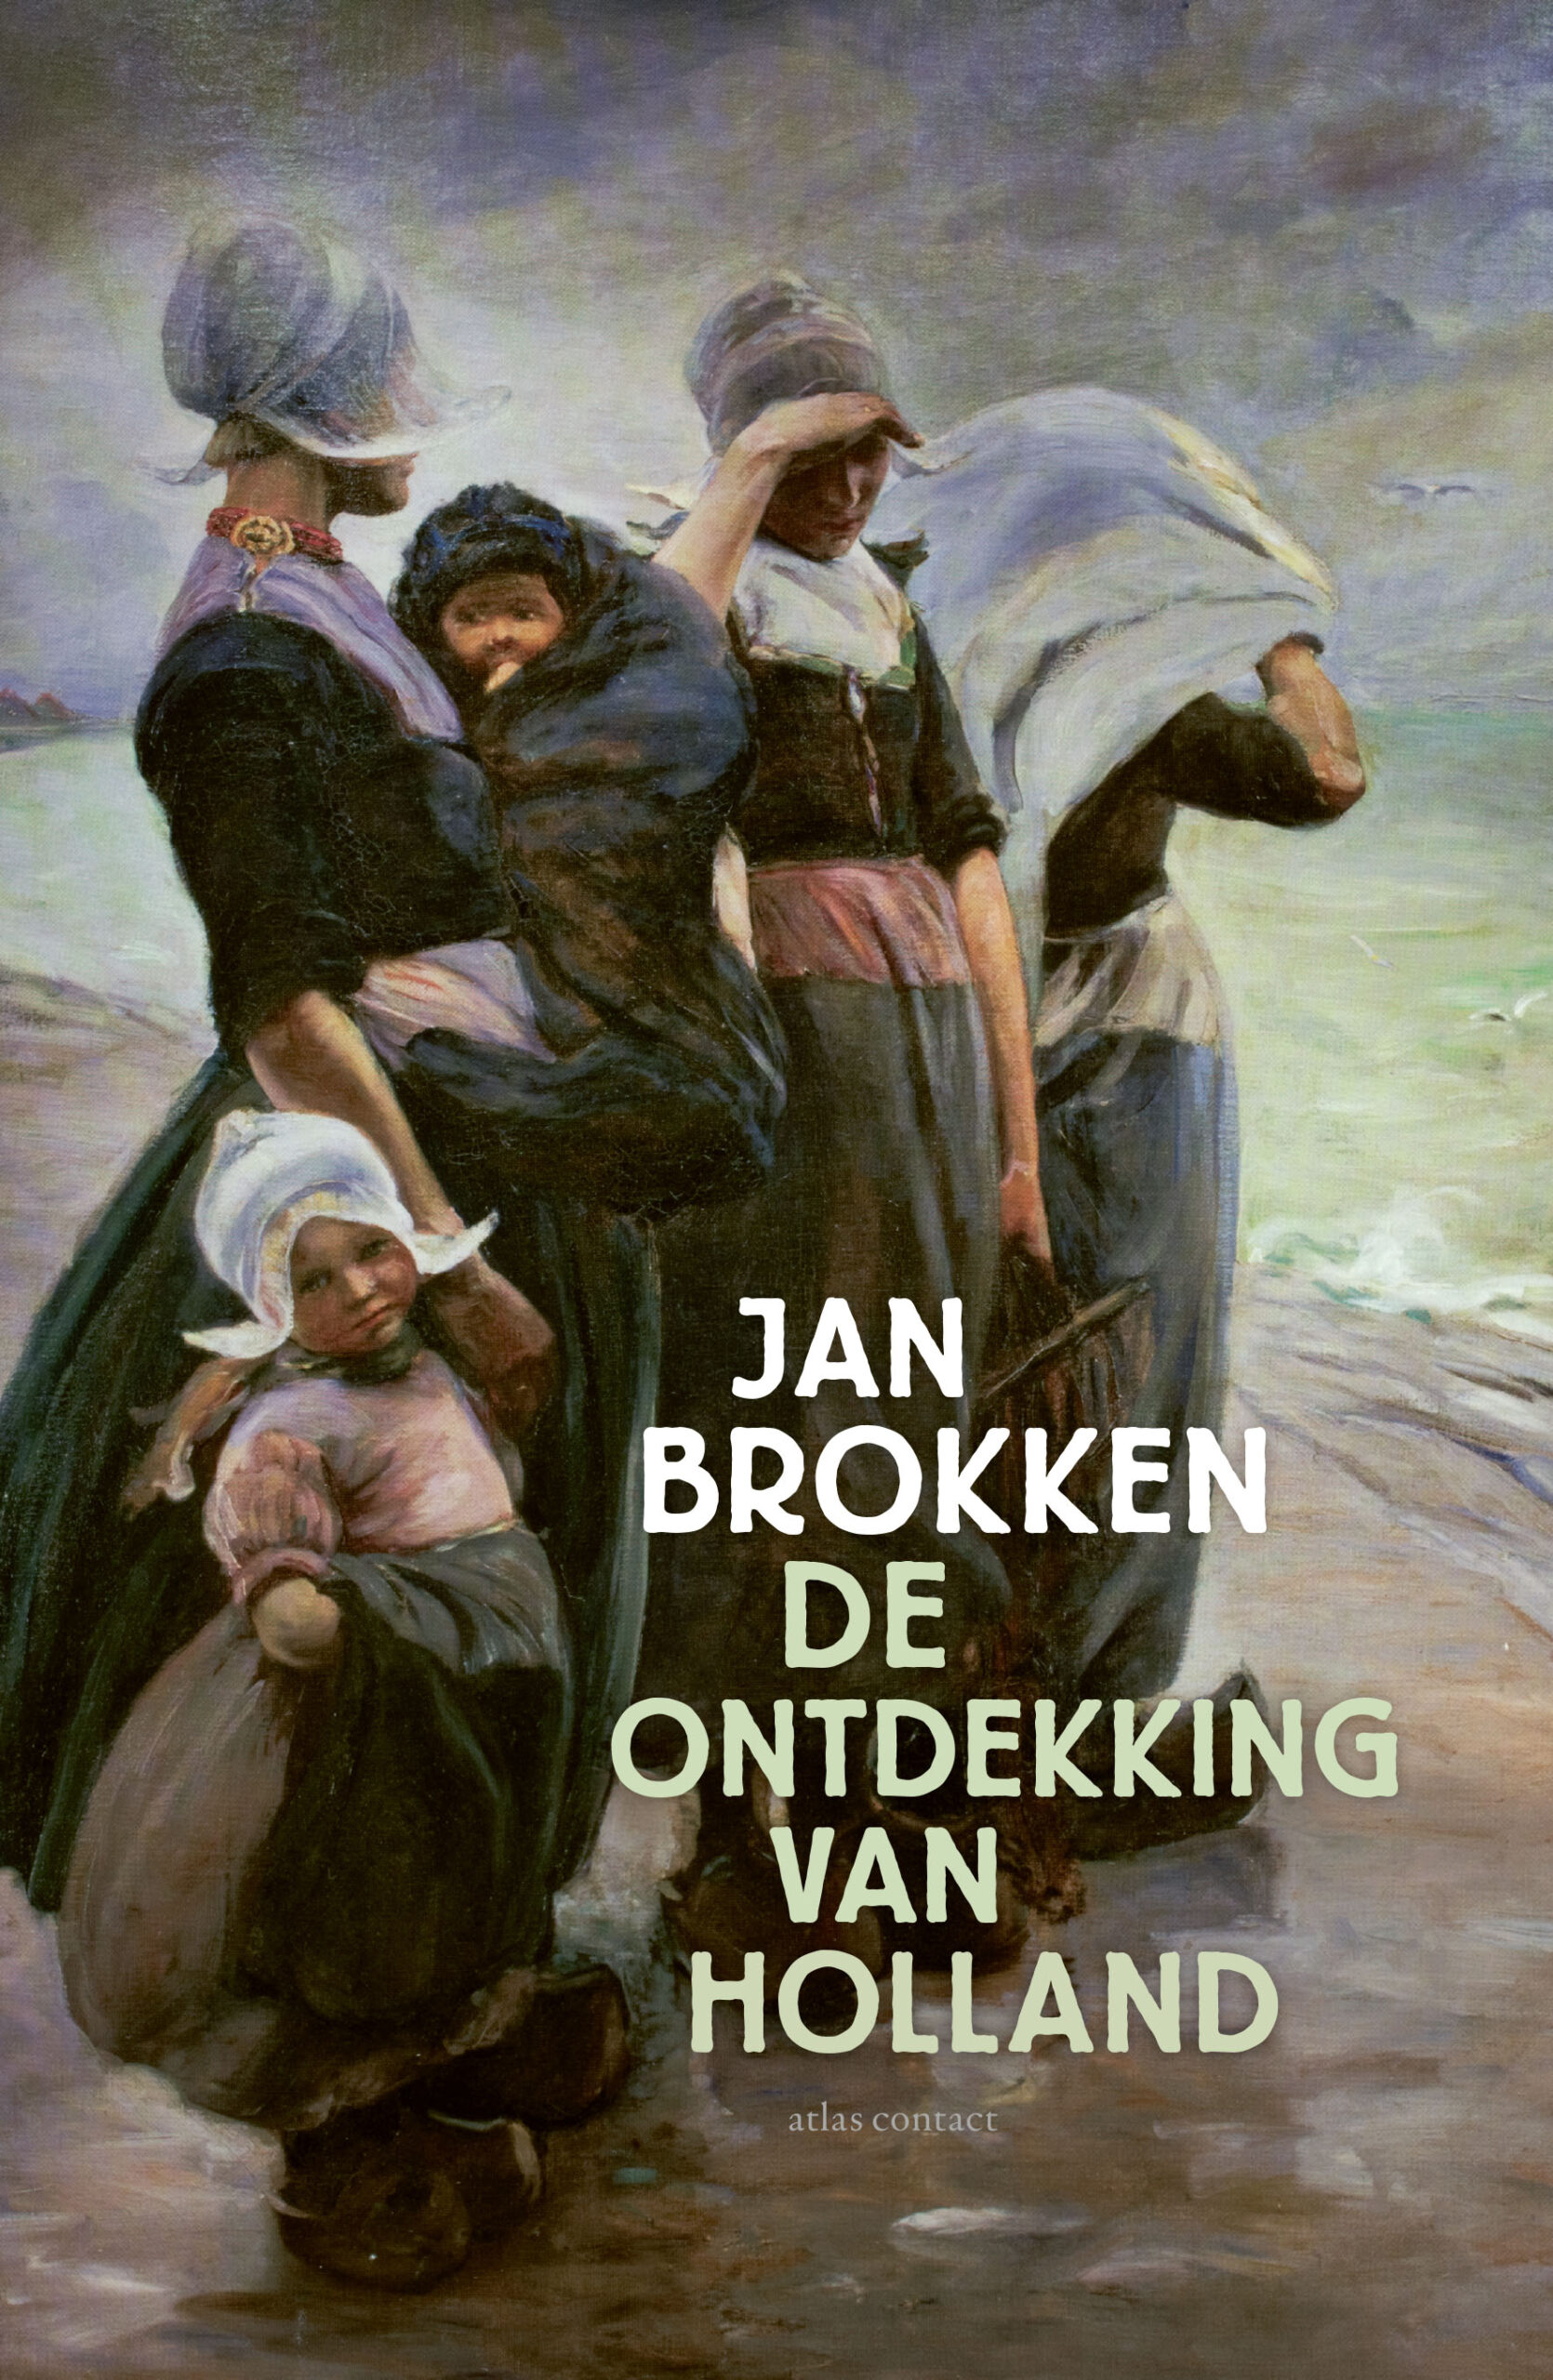 ‘De ontdekking van Holland’ het nieuwe boek van Jan Brokken verschijnt 22 februari